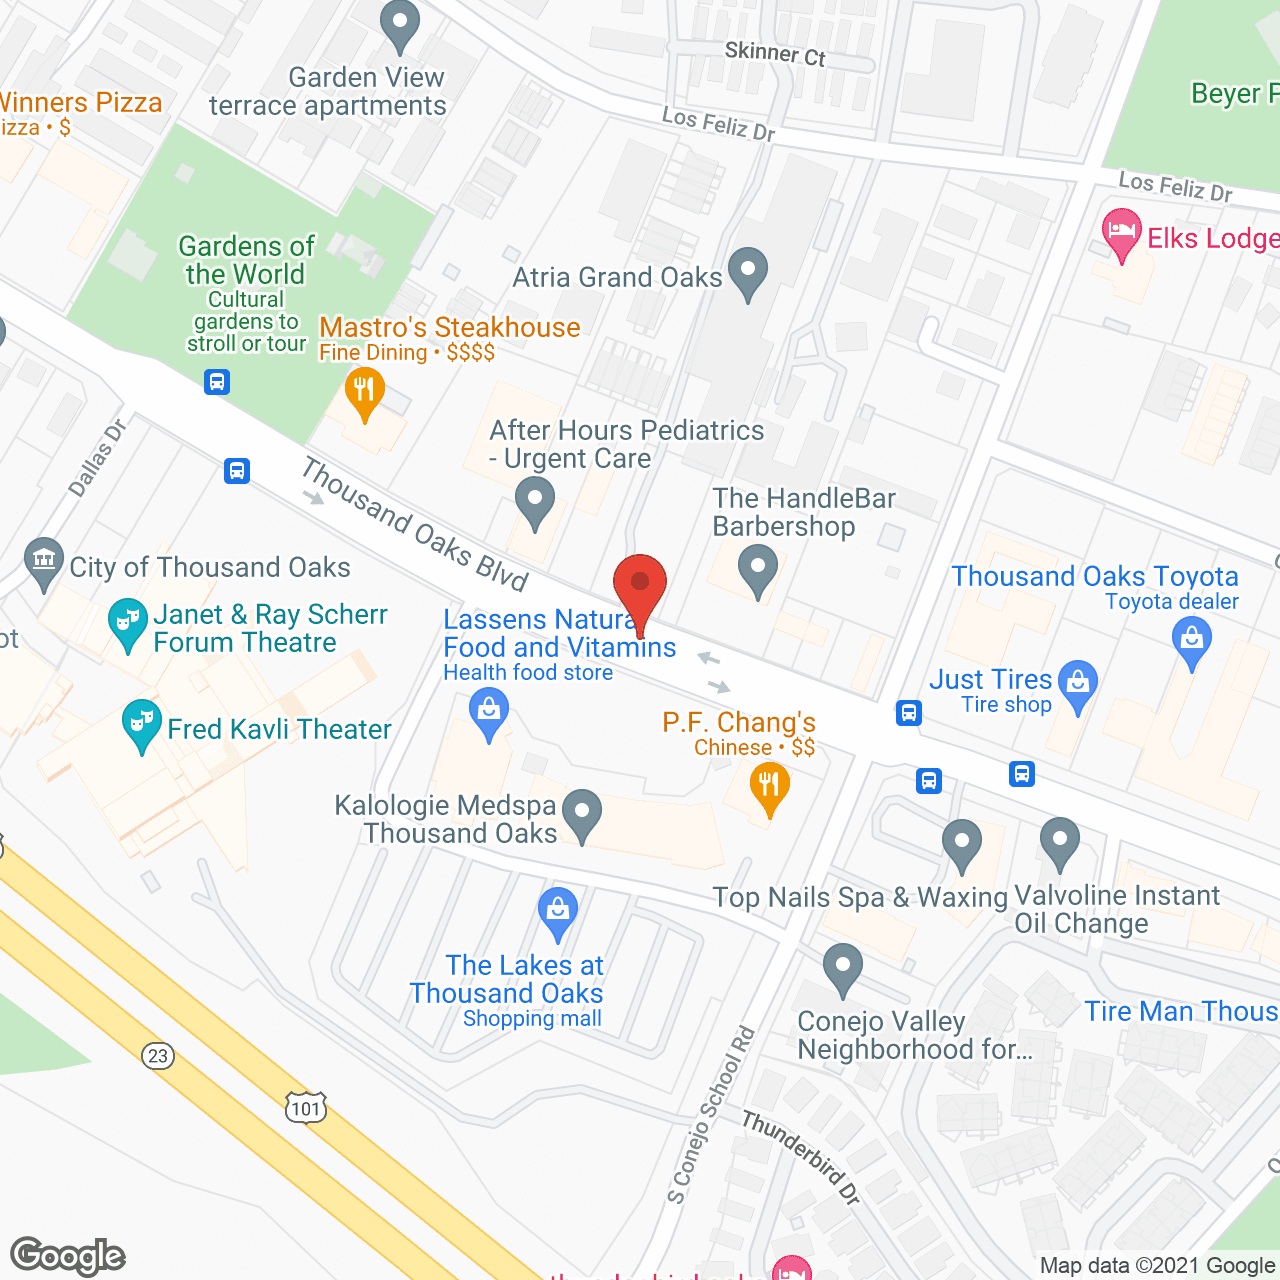 Atria Grand Oaks in google map